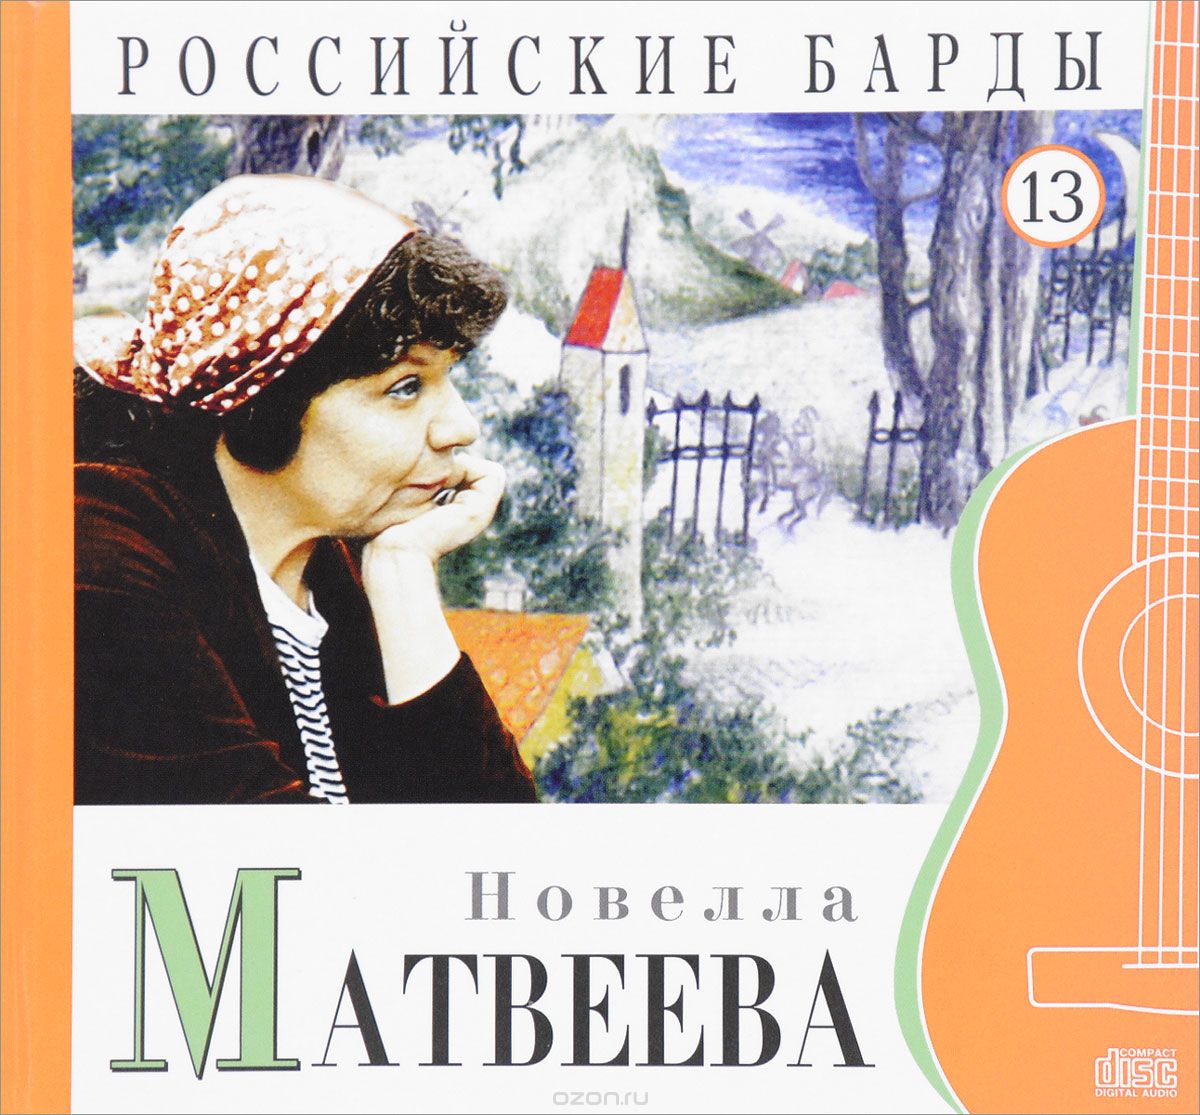 Скачать книгу "Российские барды. Том 13 (+ аудиокнига CD), Новелла Матвеева"